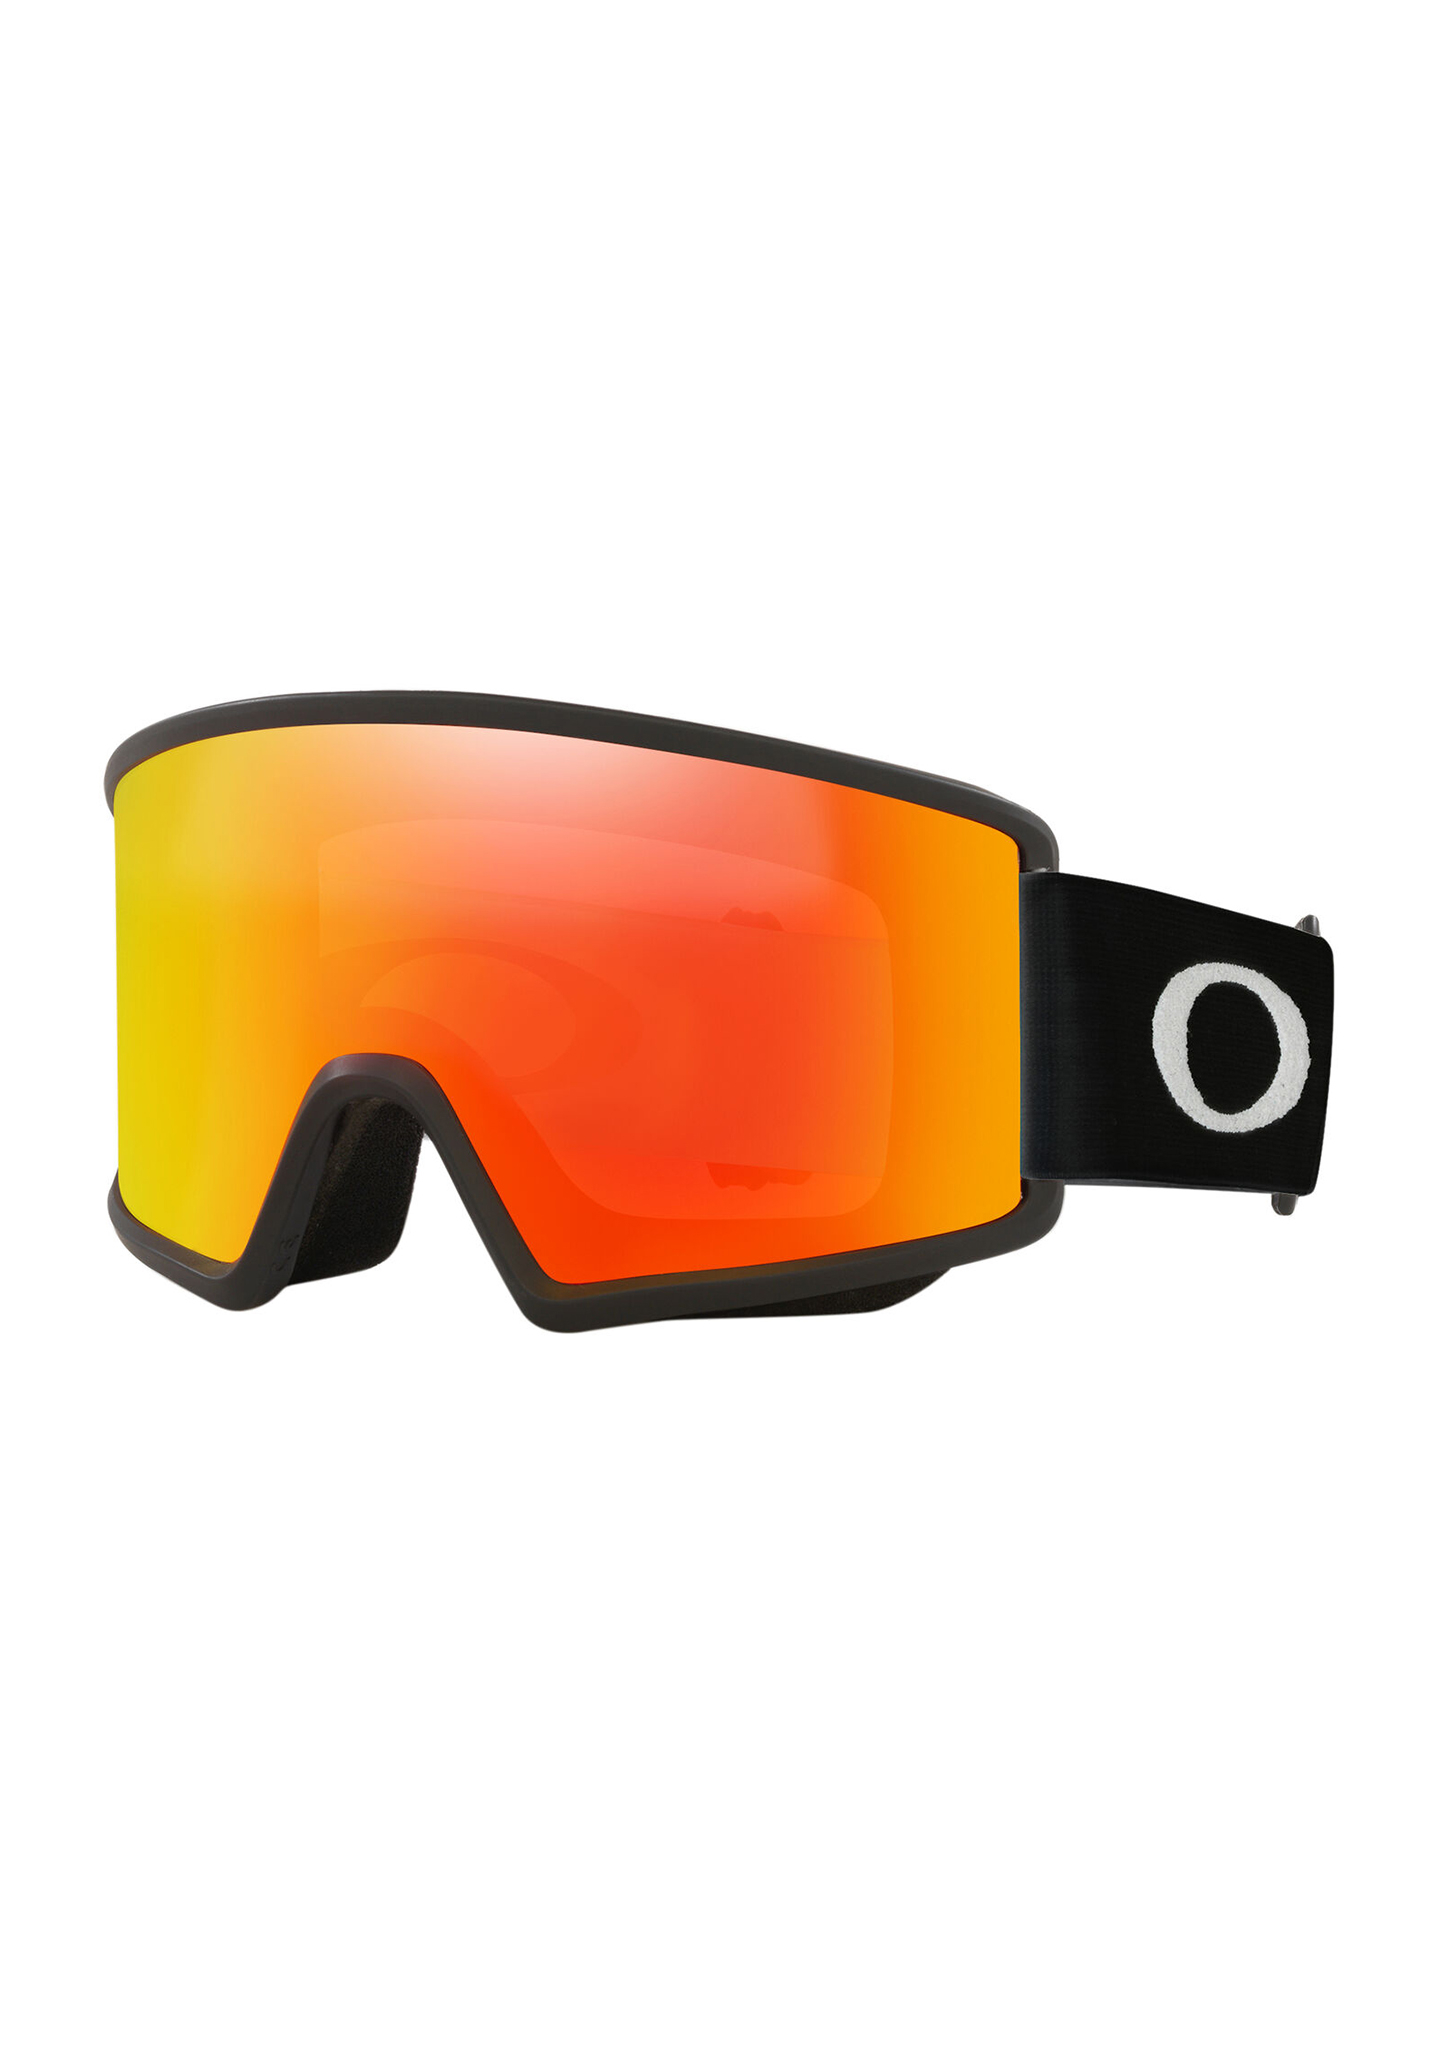 Oakley Target Line M Snowboardbrillen mattschwarz/feueriridium One Size